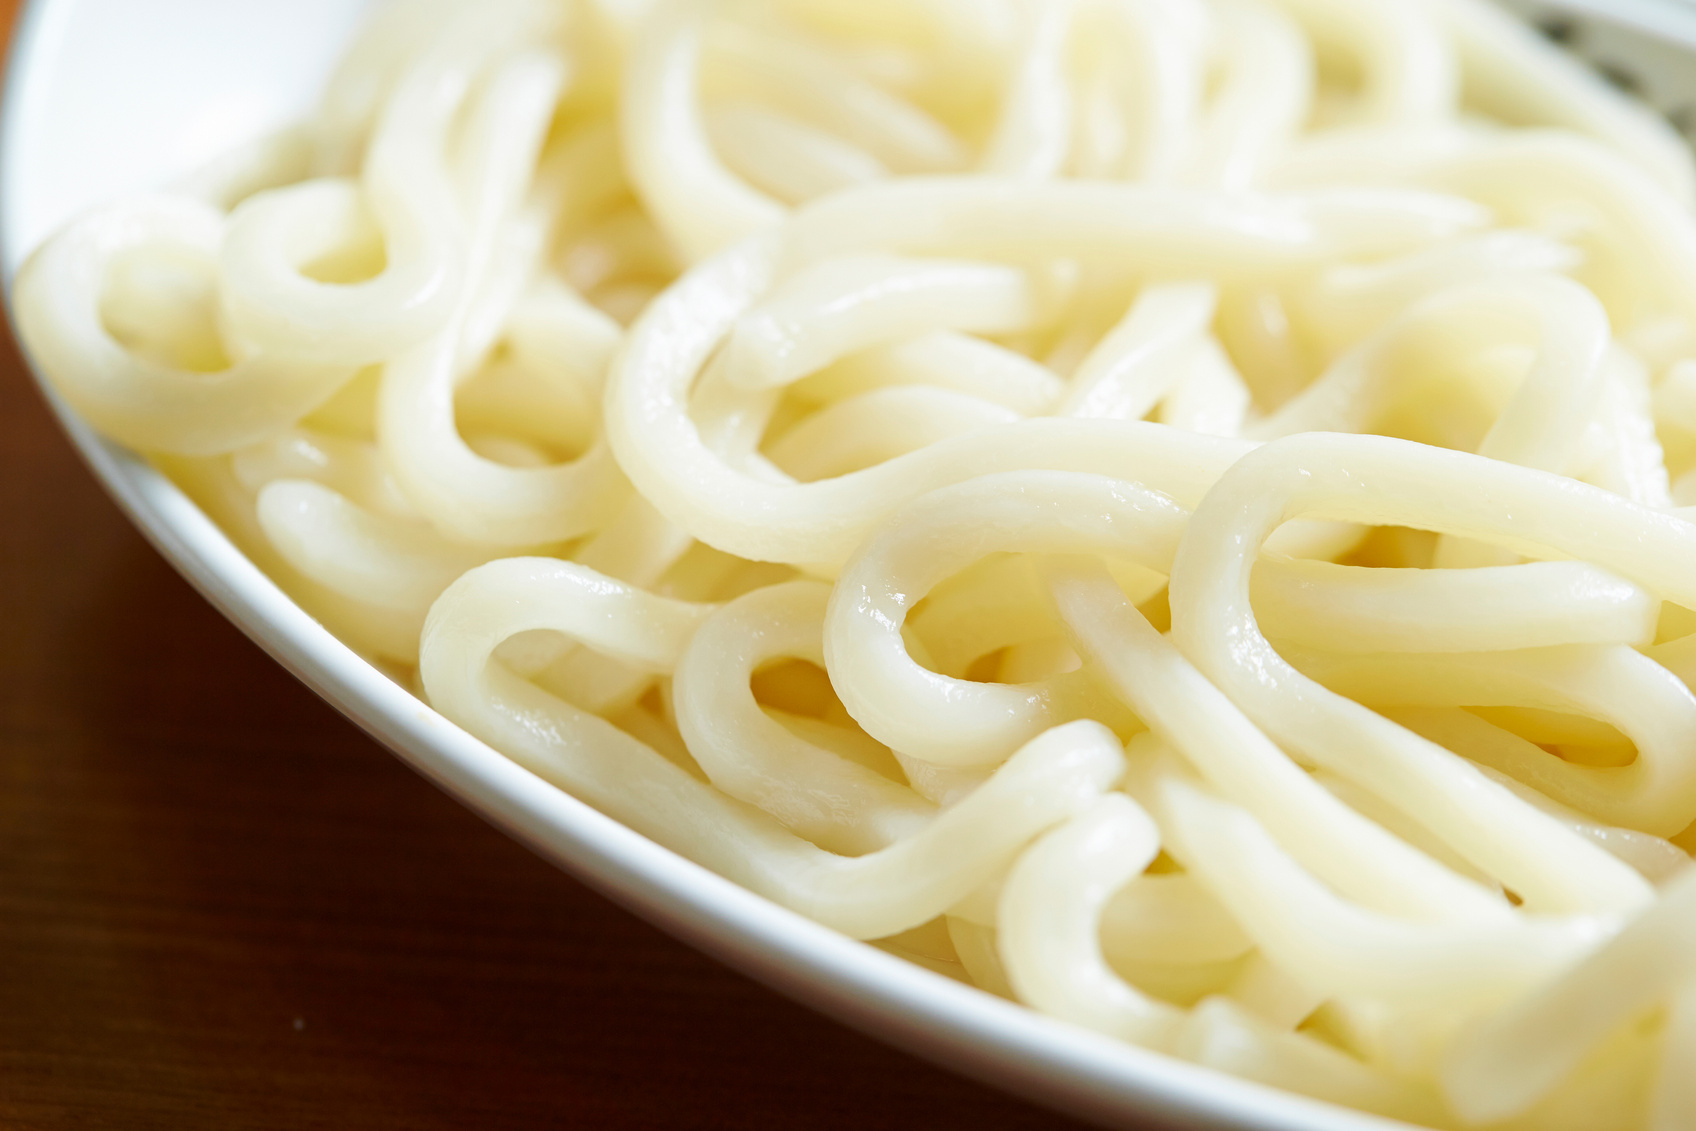 Udon noodle